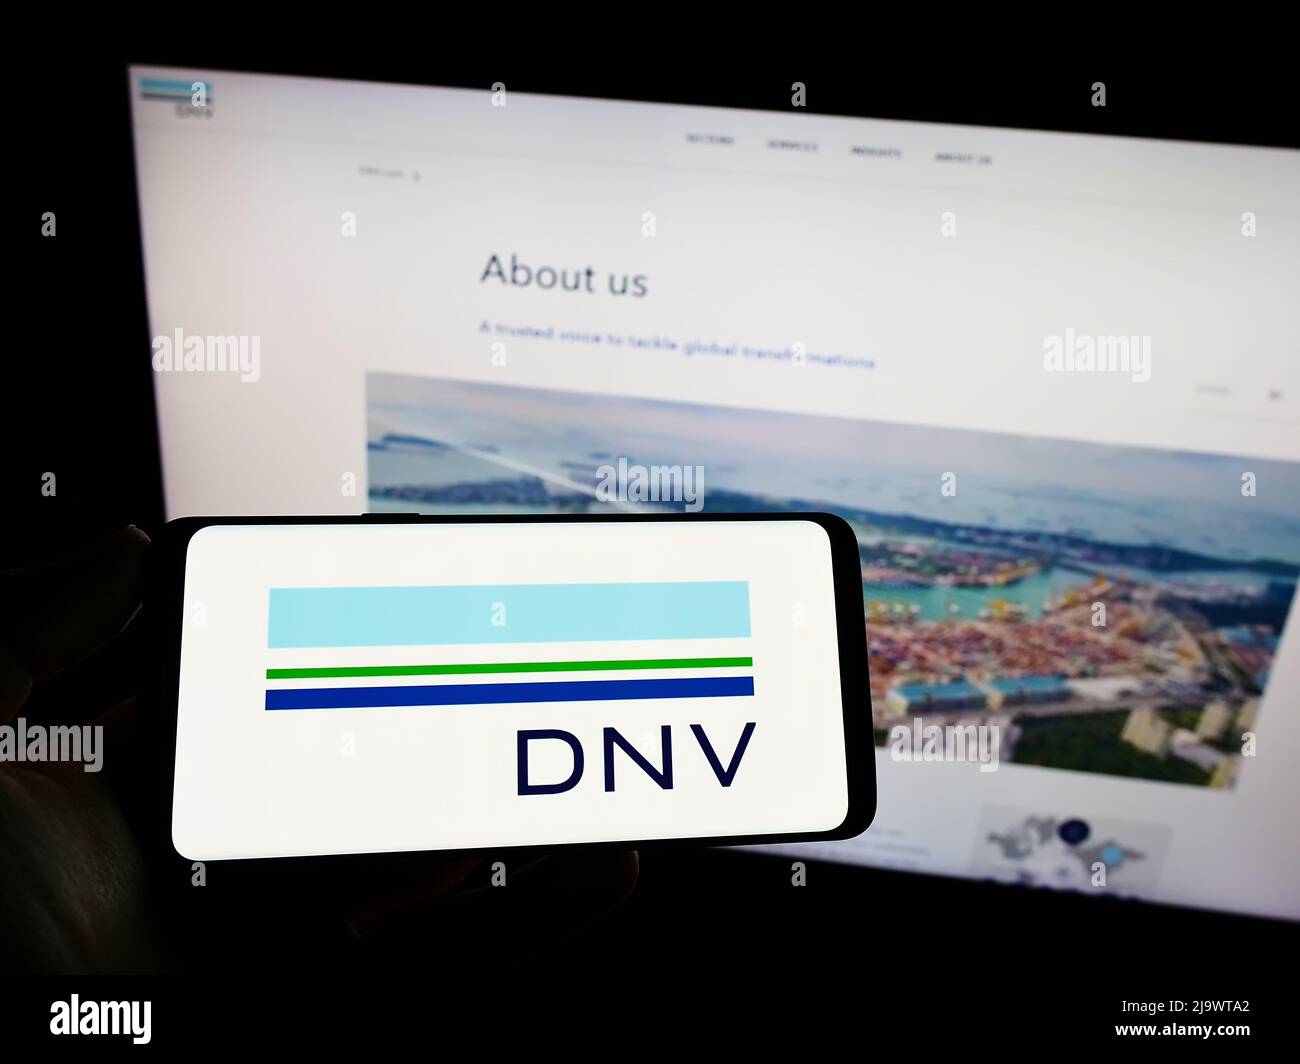 Personne tenant un smartphone avec le logo de la société norvégienne de services DNV COMME sur l'écran devant le site Web. Mise au point sur l'affichage du téléphone. Banque D'Images